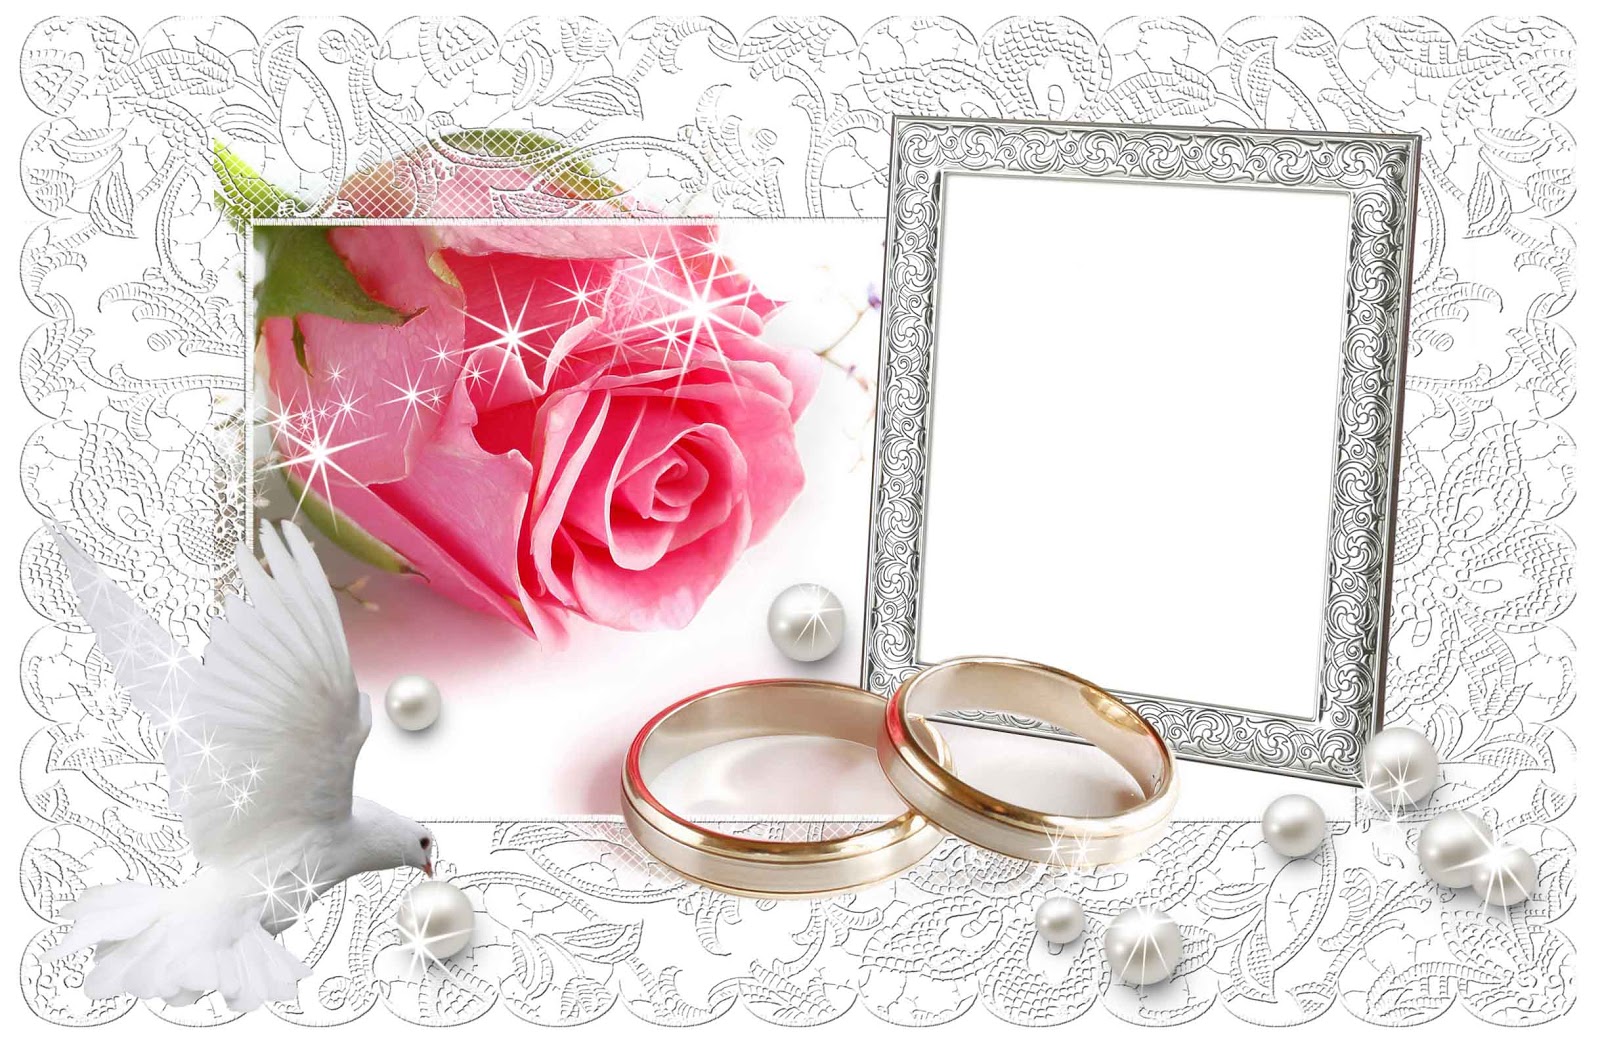 descargar fondos de boda,rosado,suministro de ceremonia de boda,marco,anillo de bodas,anillo de compromiso